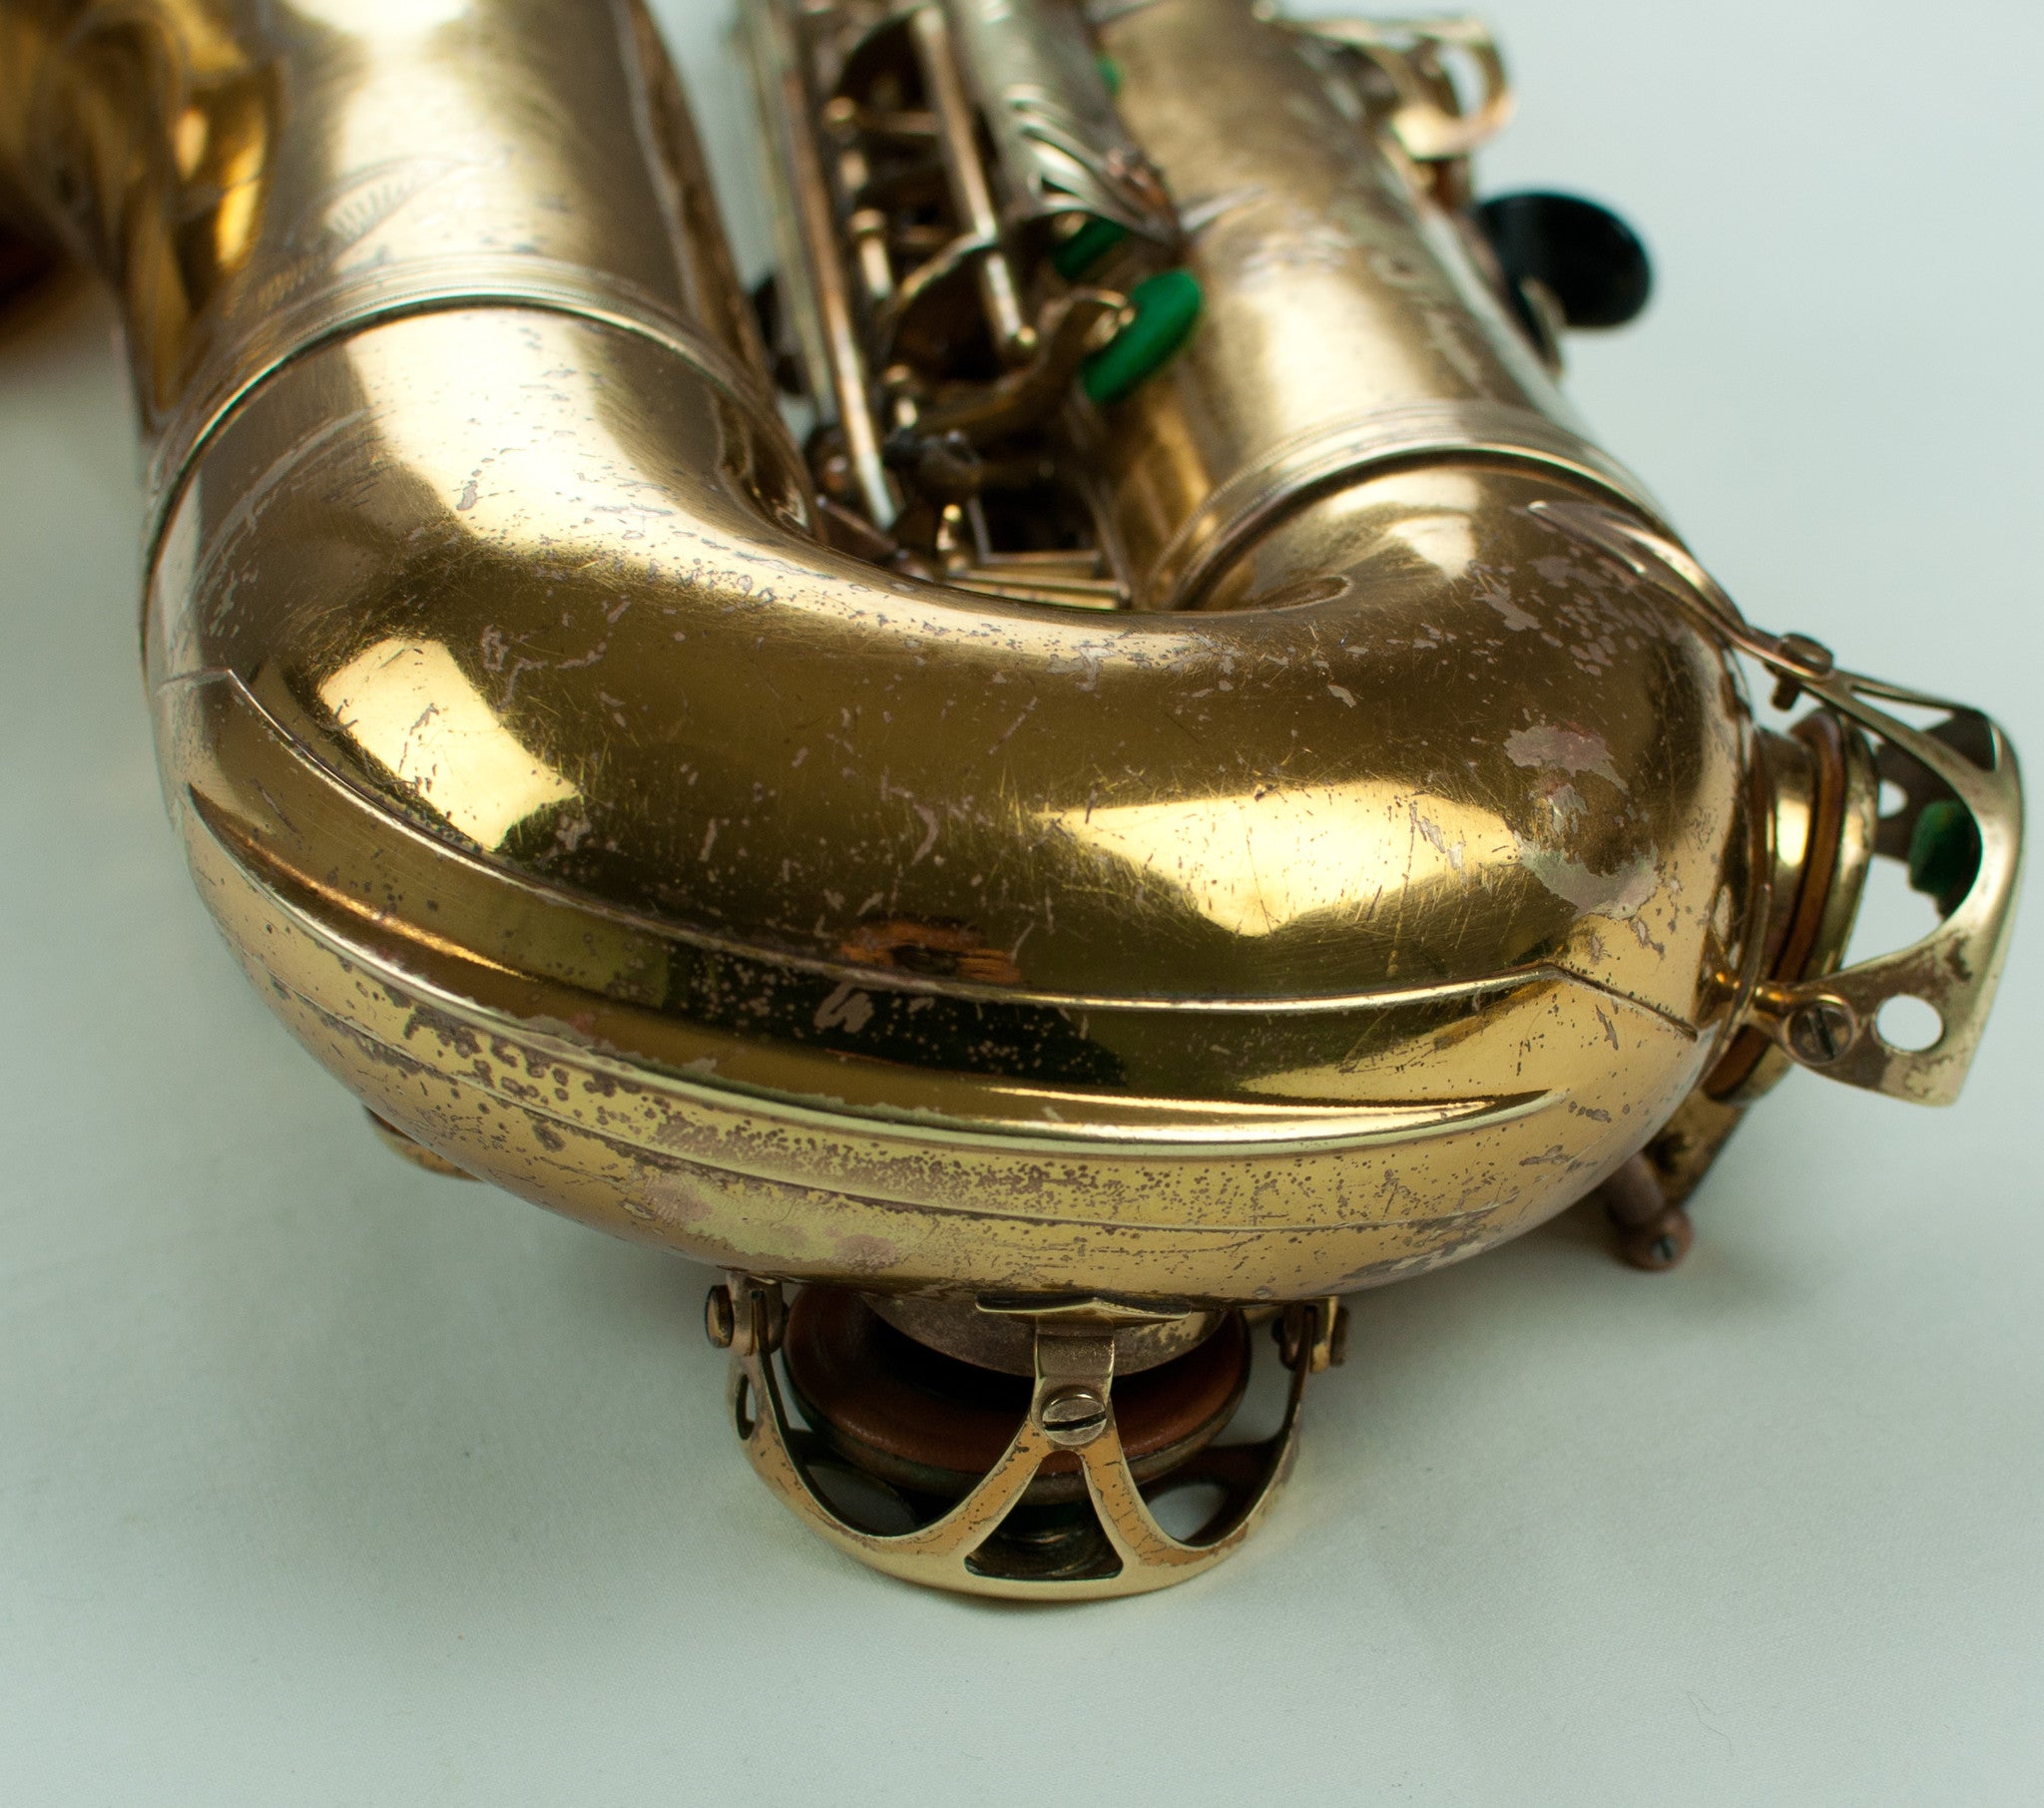 Selmer Mark VI Tenor Saxophone, 149,xxx, Original Lacquer